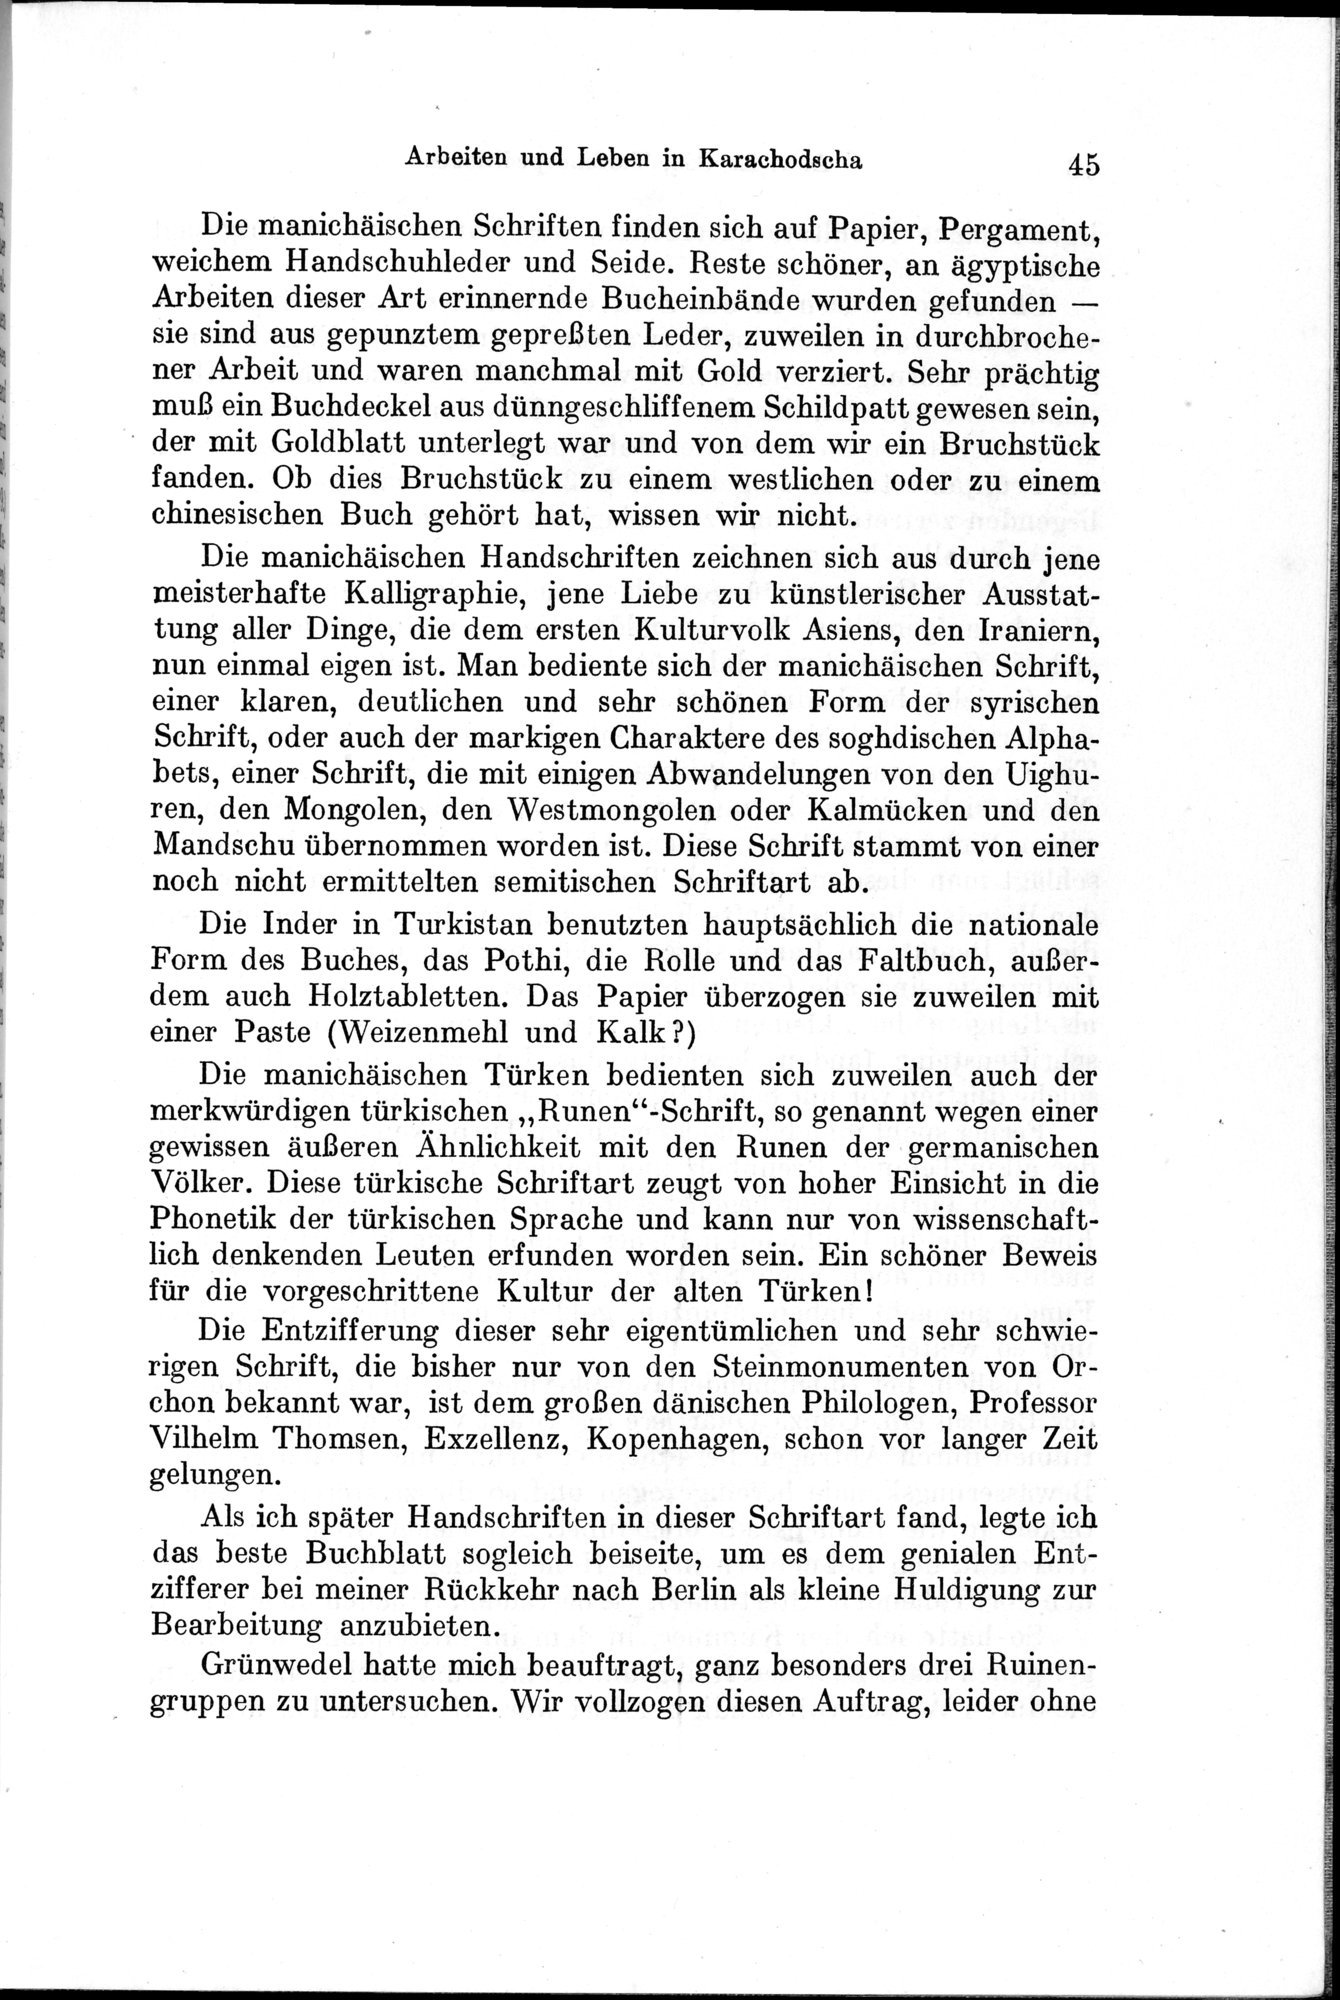 Auf Hellas Spuren in Ostturkistan : vol.1 / Page 71 (Grayscale High Resolution Image)